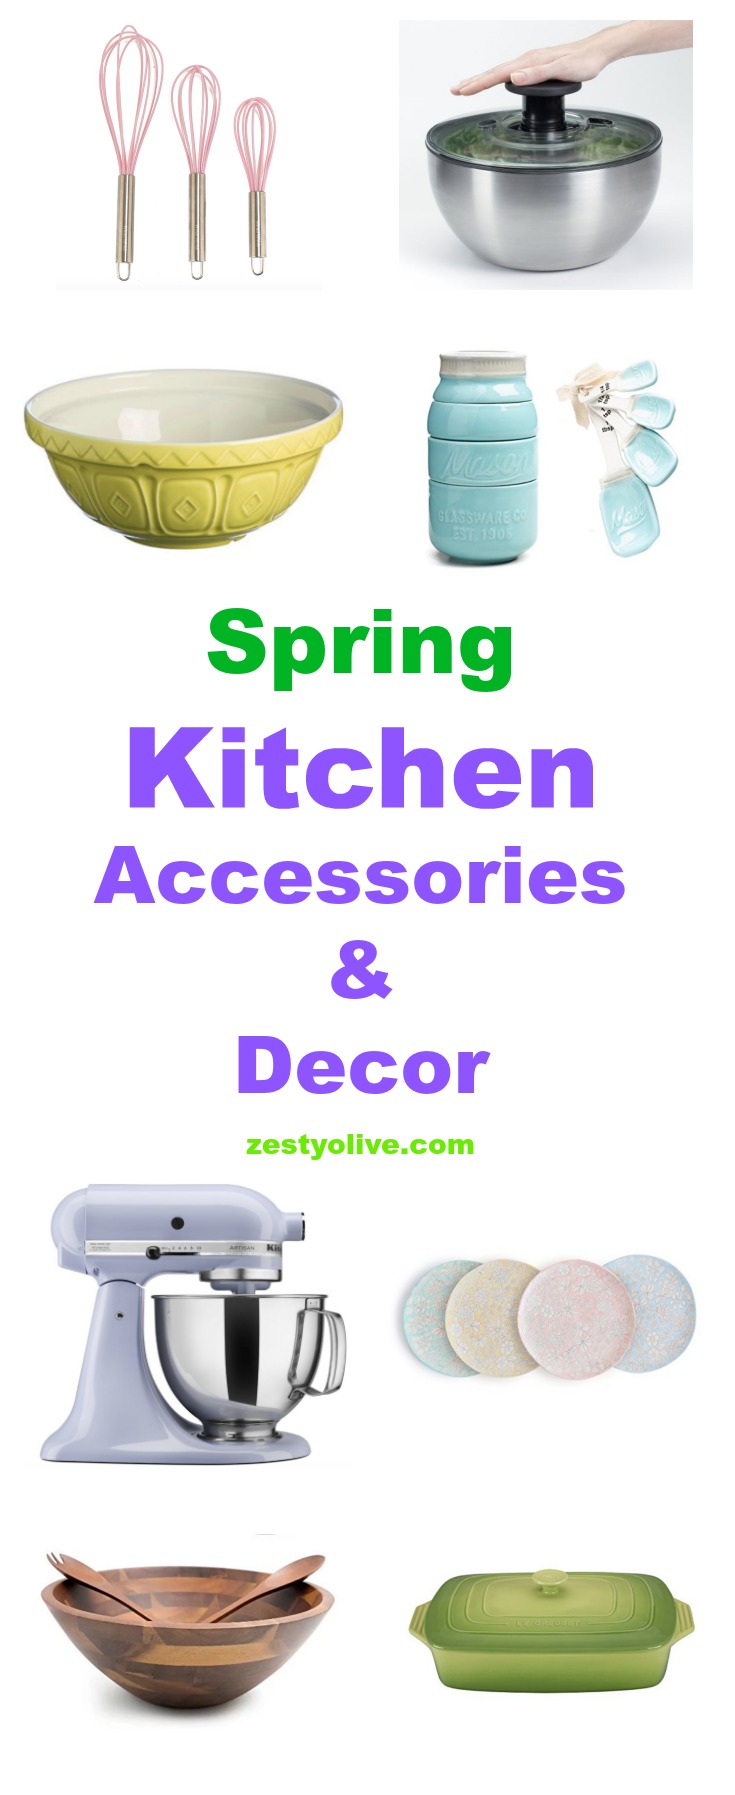 Green Kitchenware, Green Accessories